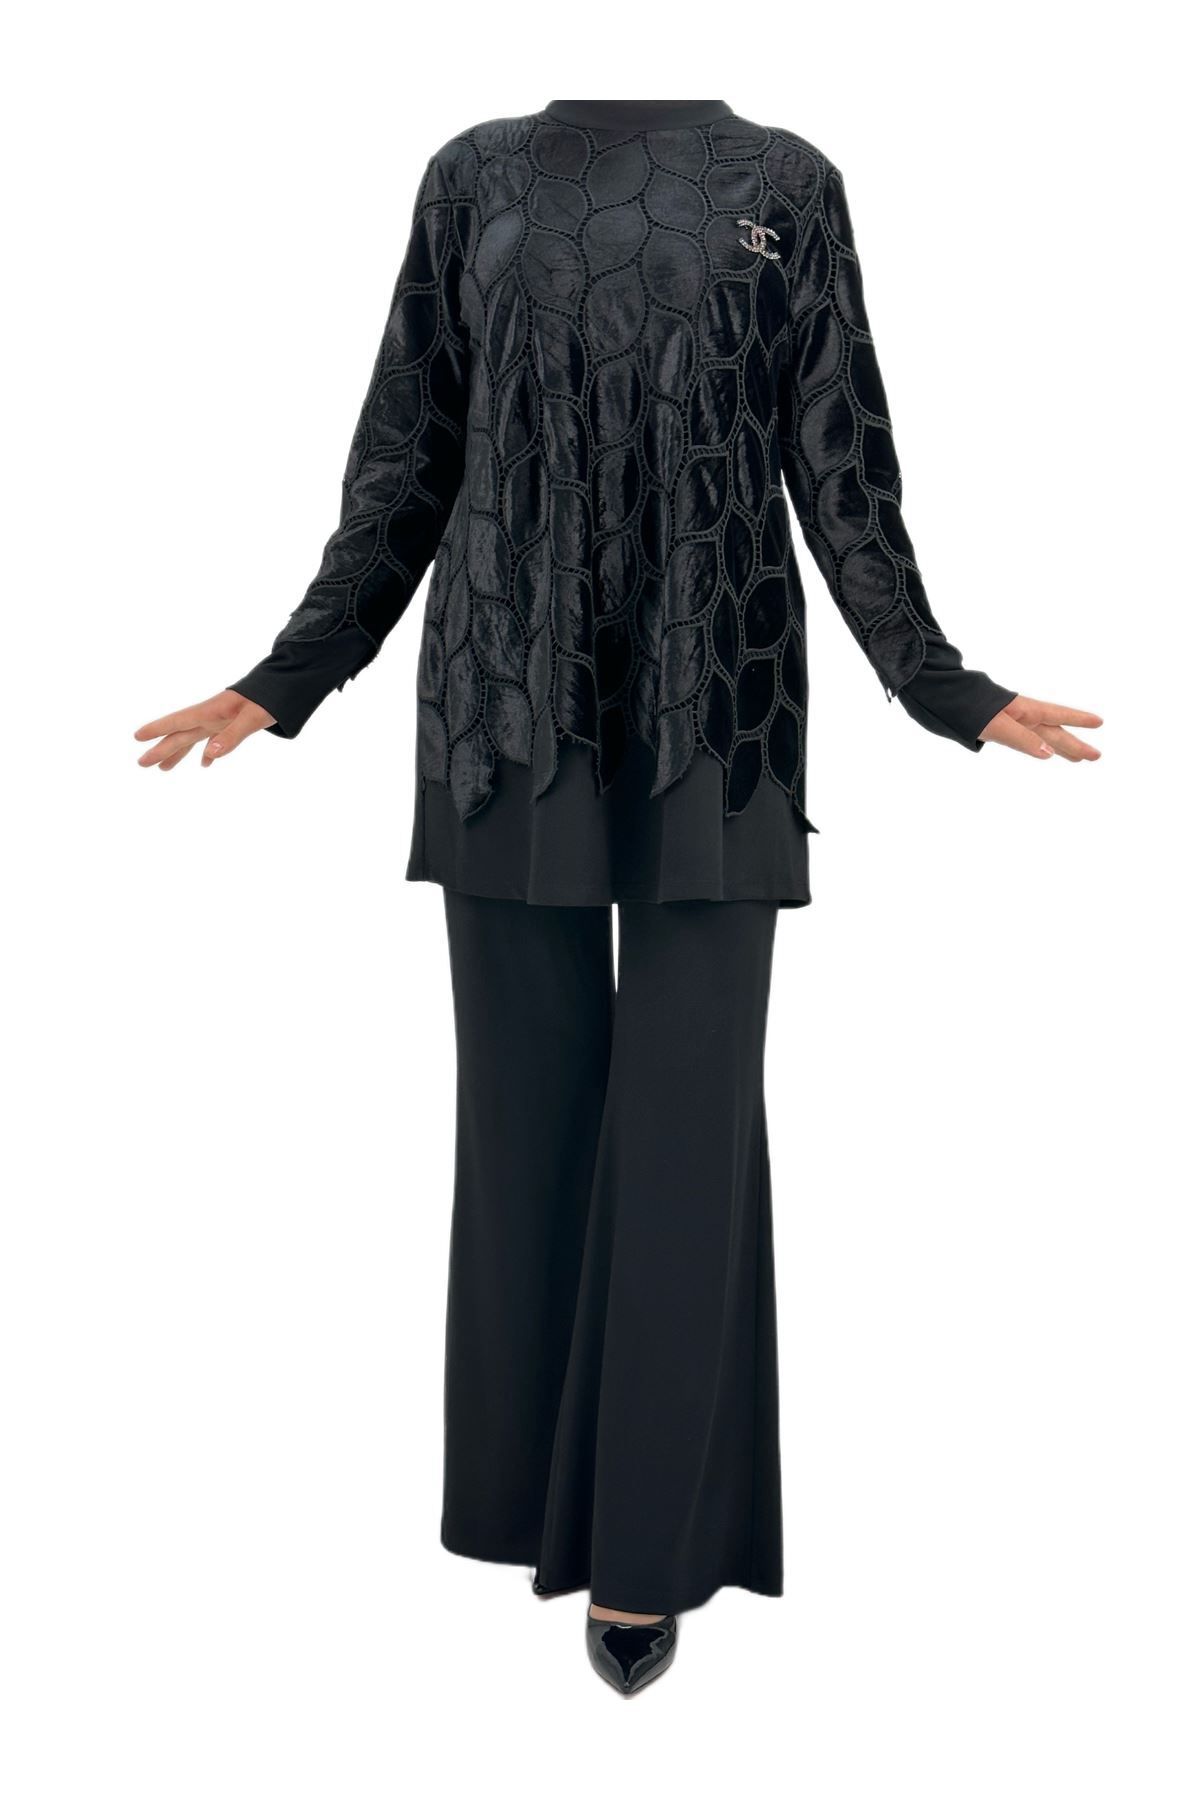 ottoman wear OTW1940 Kadife Yapraklı Takım Siyah